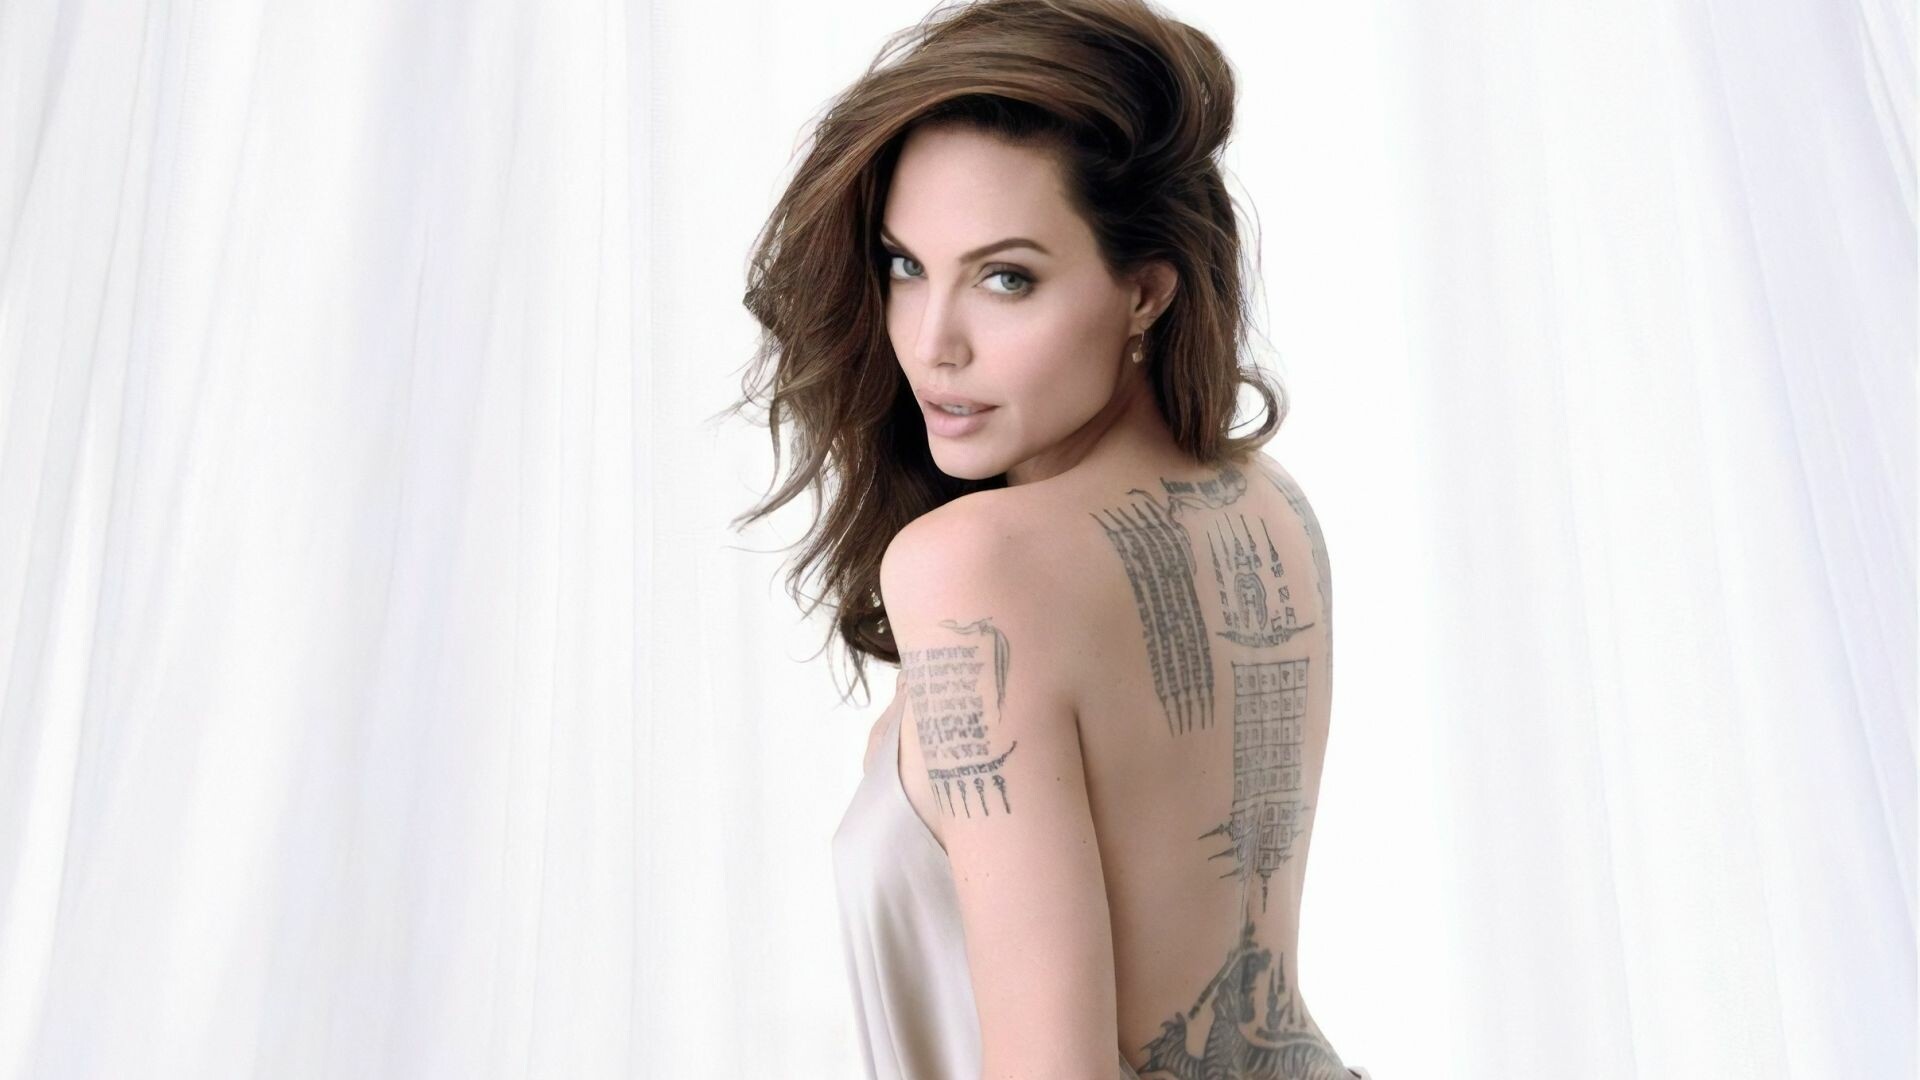 Angelina Jolie: Celebrity, Gorgeous actress, Filmmaker. 1920x1080 Full HD Wallpaper.